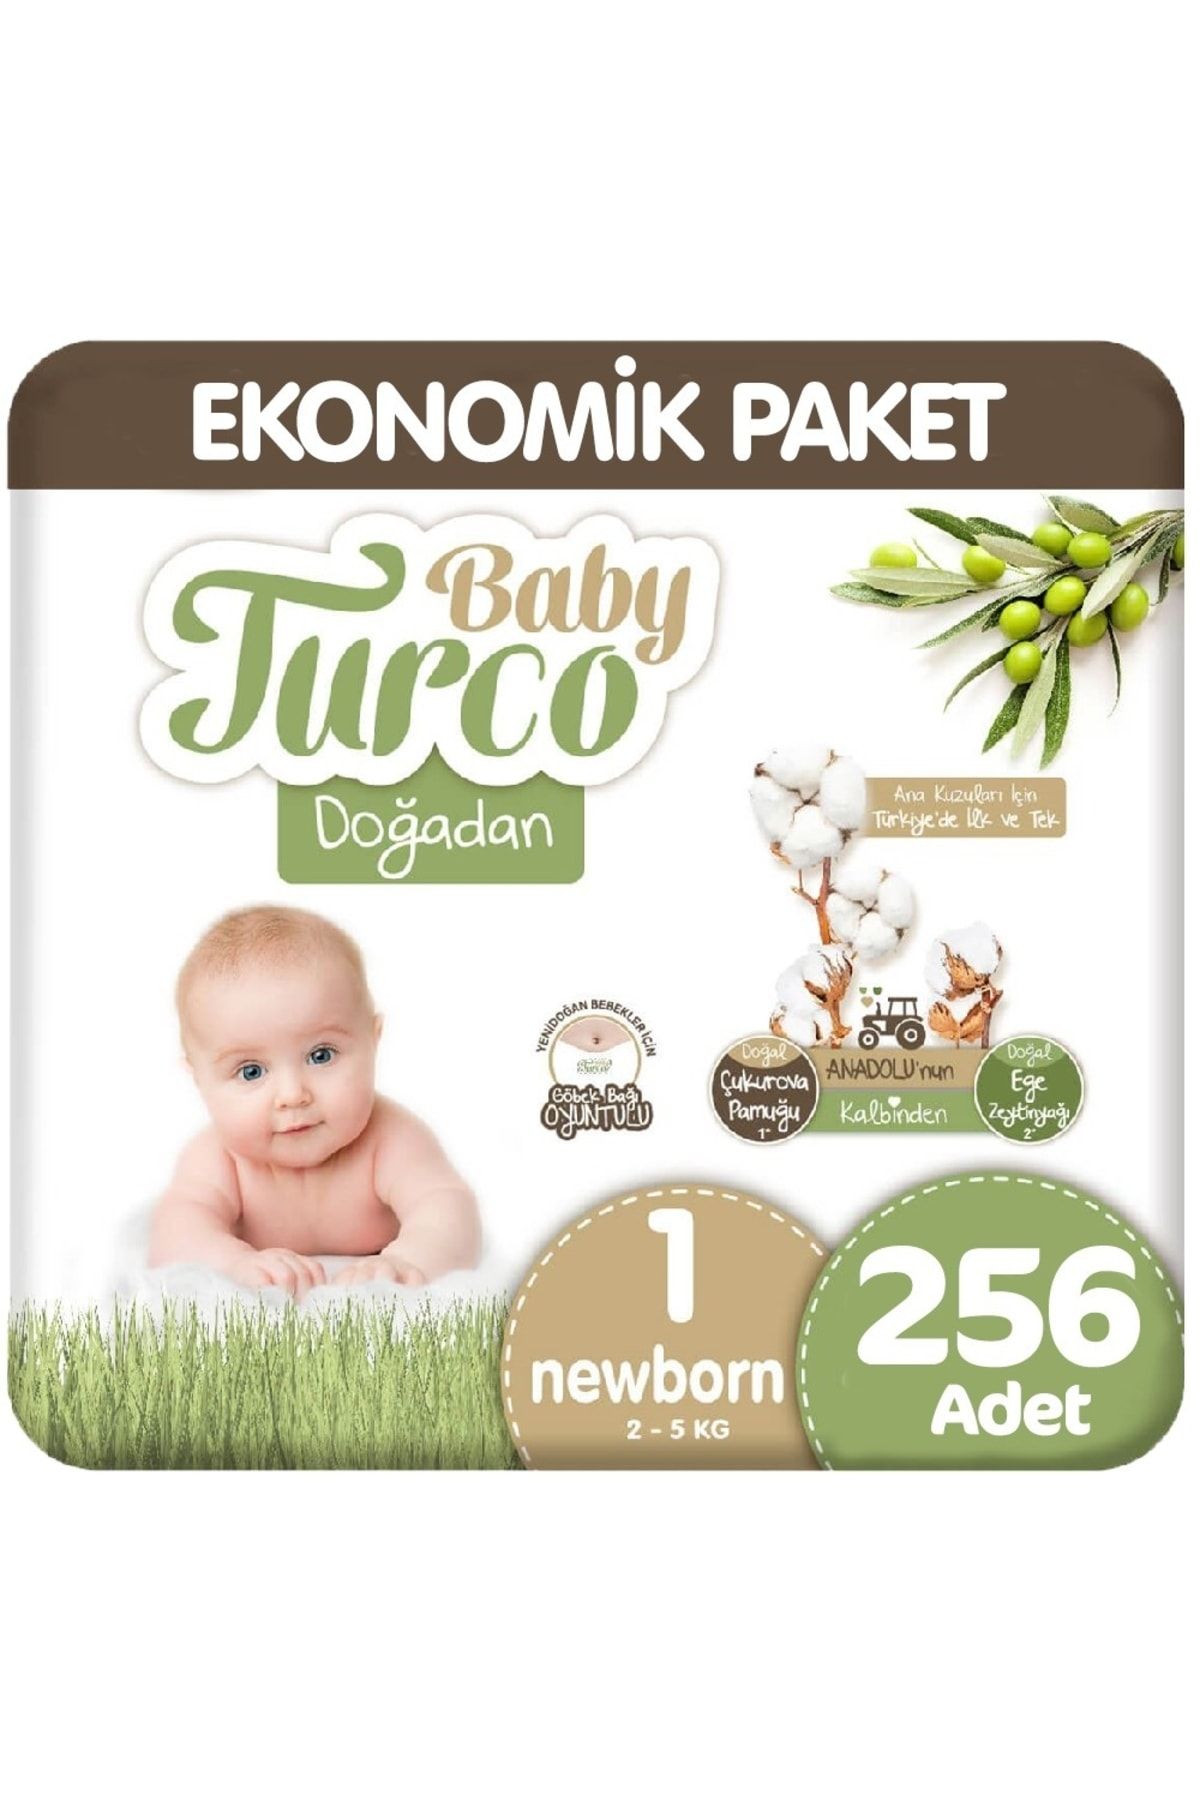 Baby Turco Doğadan 1 Beden Ekonomik 64x4 256 Adet